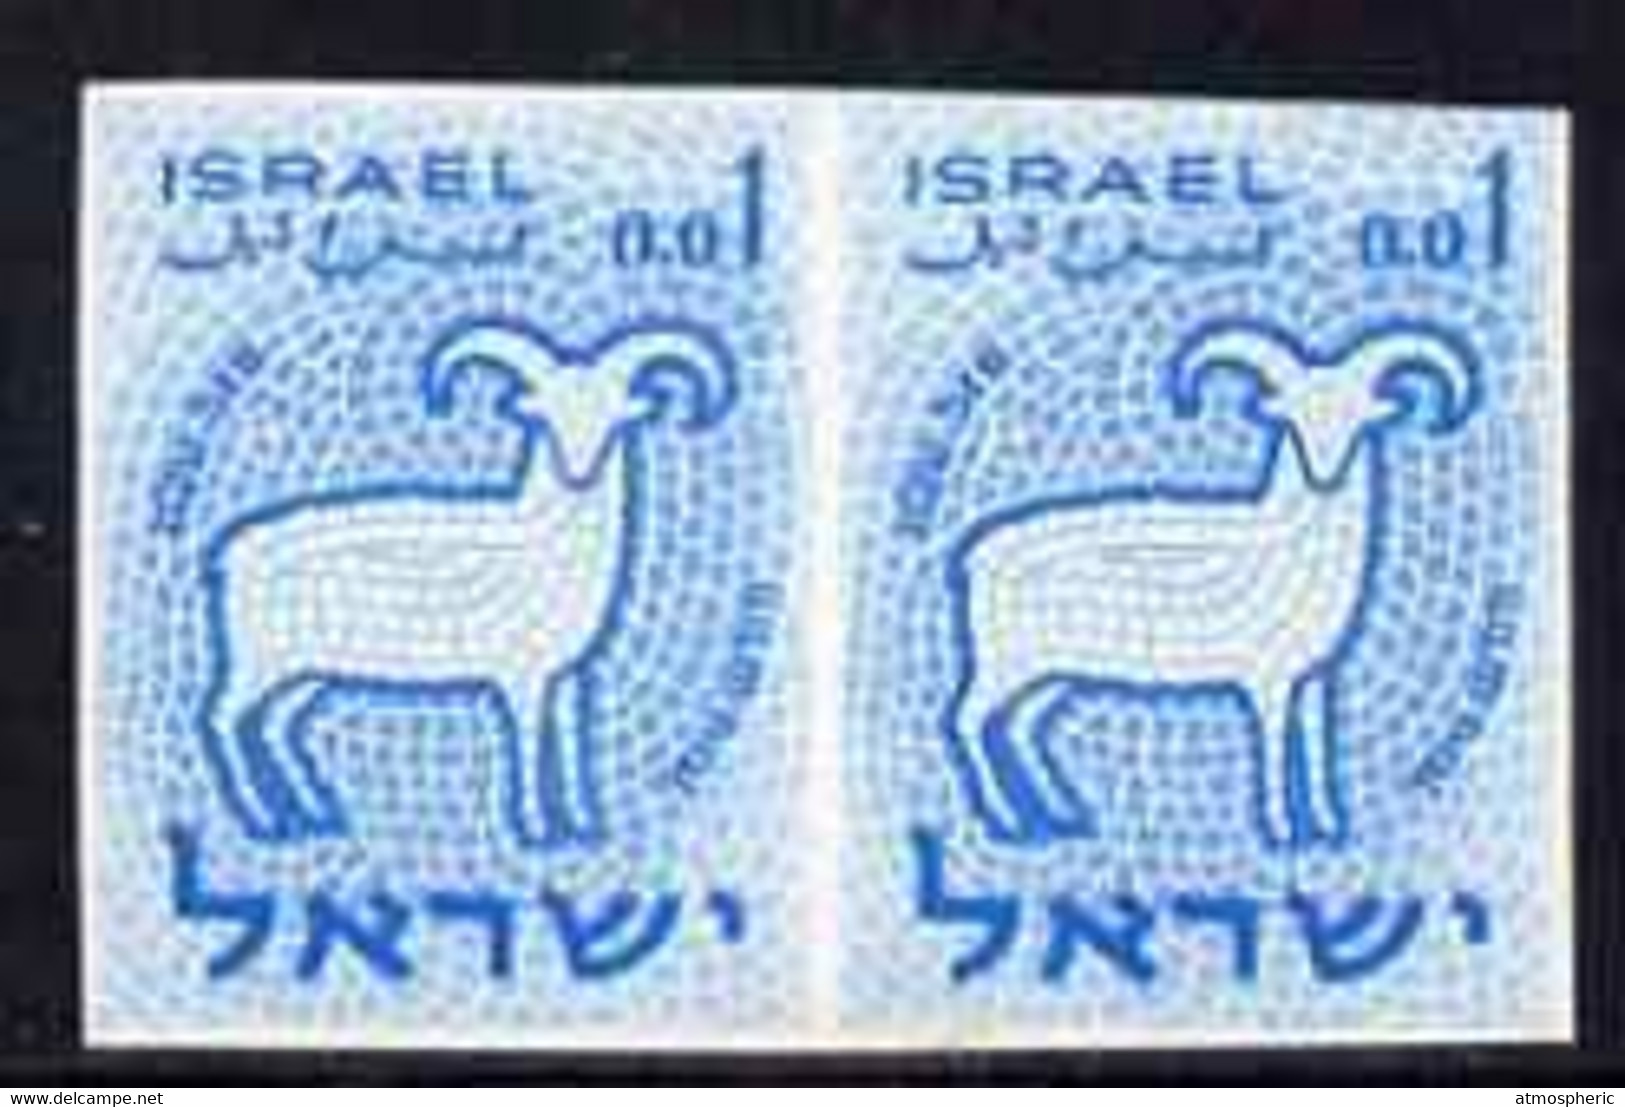 77640 Israel 1961 Zodiac 1a Aries Imperf Pair In Blue (issued Stamp Was Emerald) From The Only Sheet Known U/M - Sin Dentar, Pruebas De Impresión Y Variedades